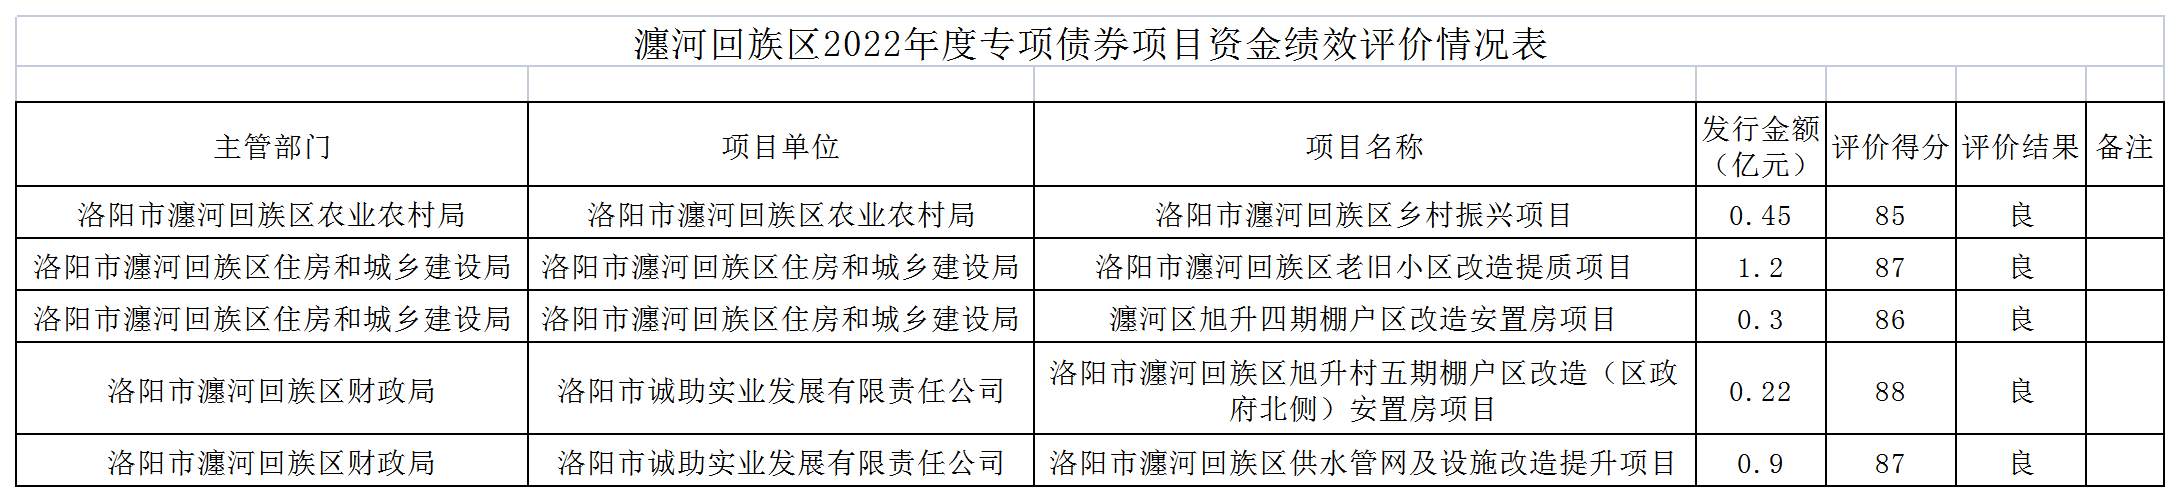 附件2：瀍河区新增债券项目情况表_Sheet1(1).png